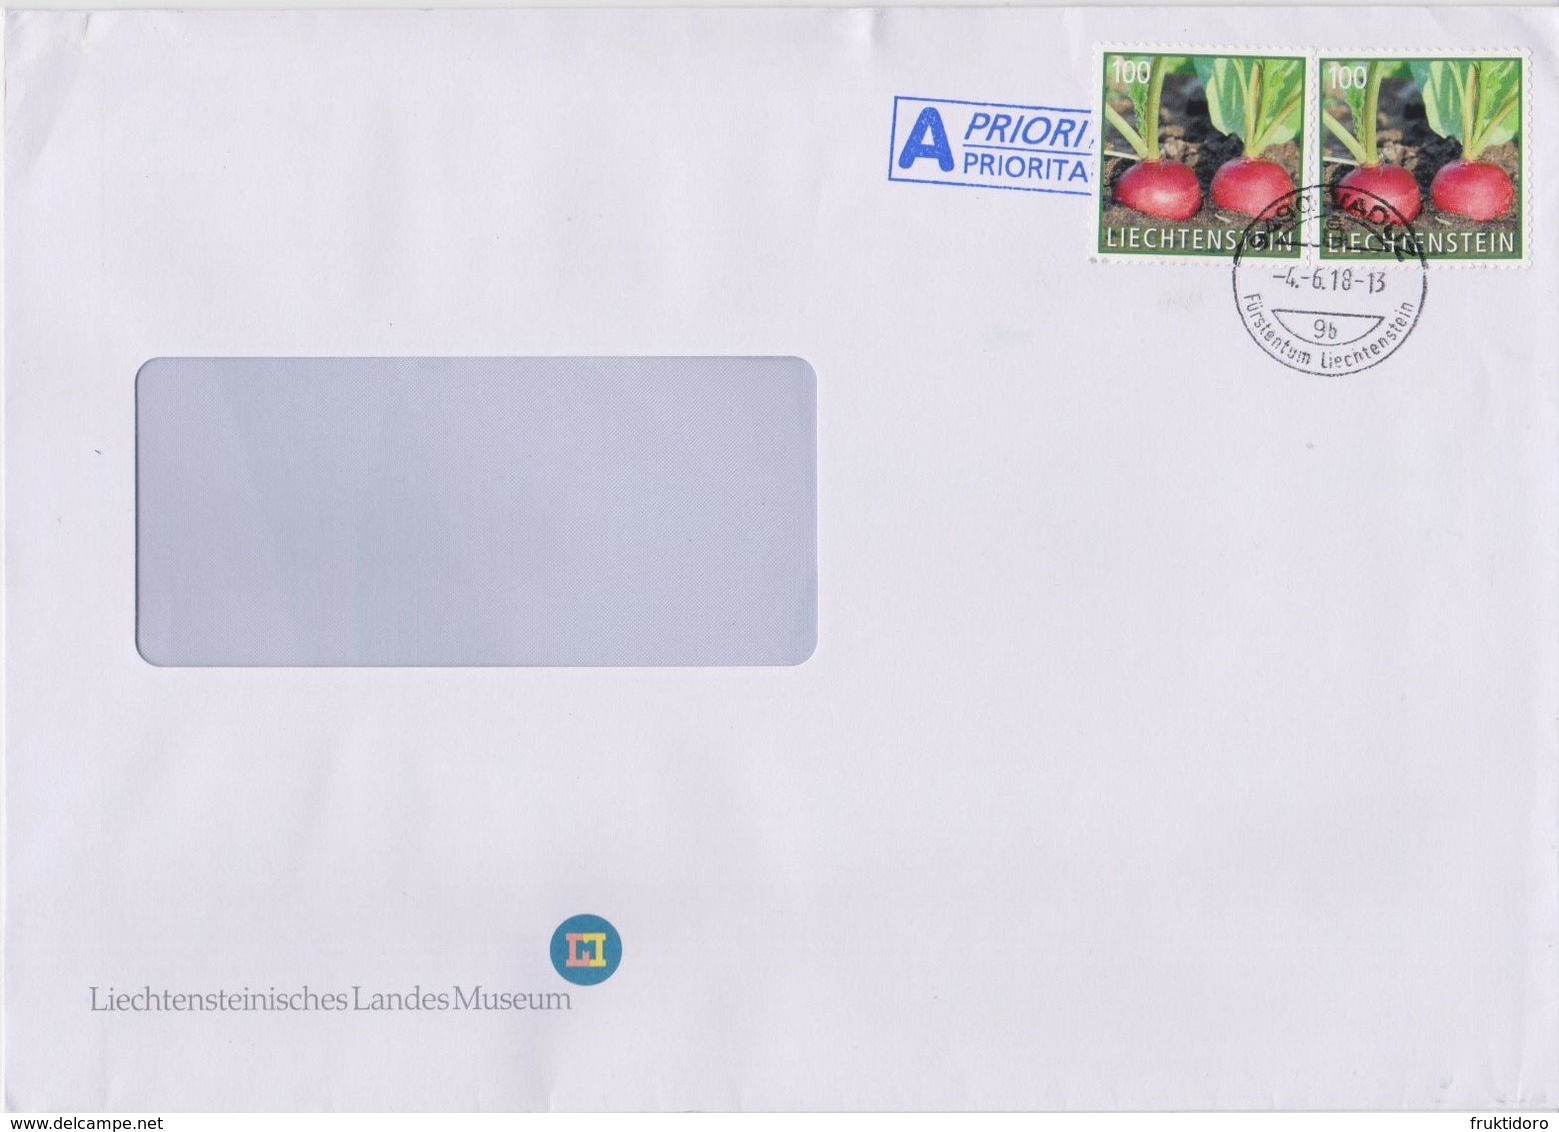 Liechtenstein Postmark - Envelope Liechtenschteinisches Landesmuseum - Mi 1889 Vegetables - Radish - Maschinenstempel (EMA)